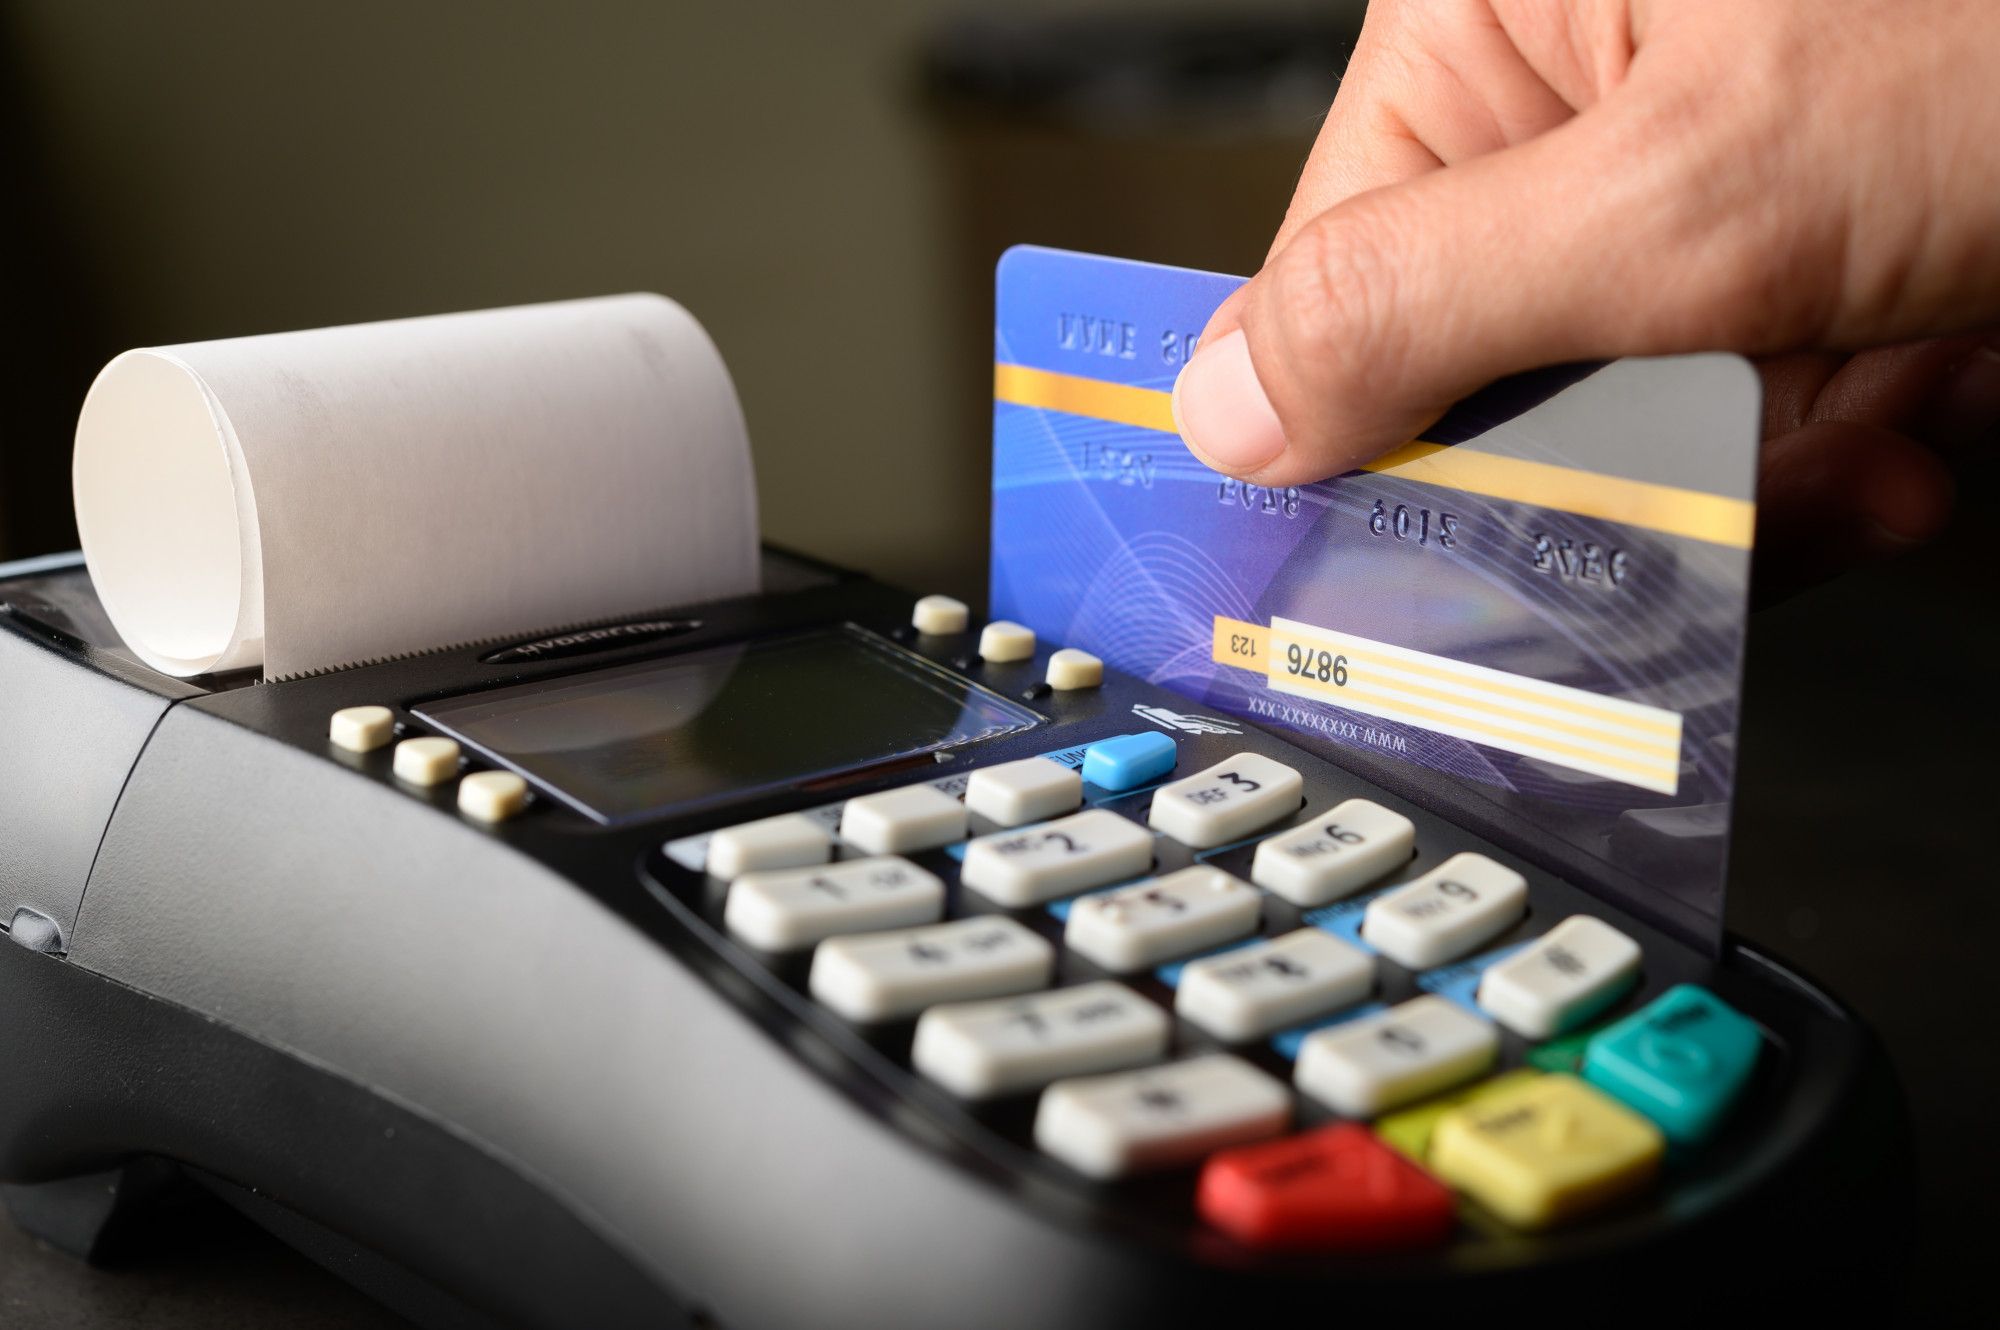 5 Cara Menjaga Keamanan Transaksi dari Kartu Kredit, Inilah Tutorial Bagi Pemula